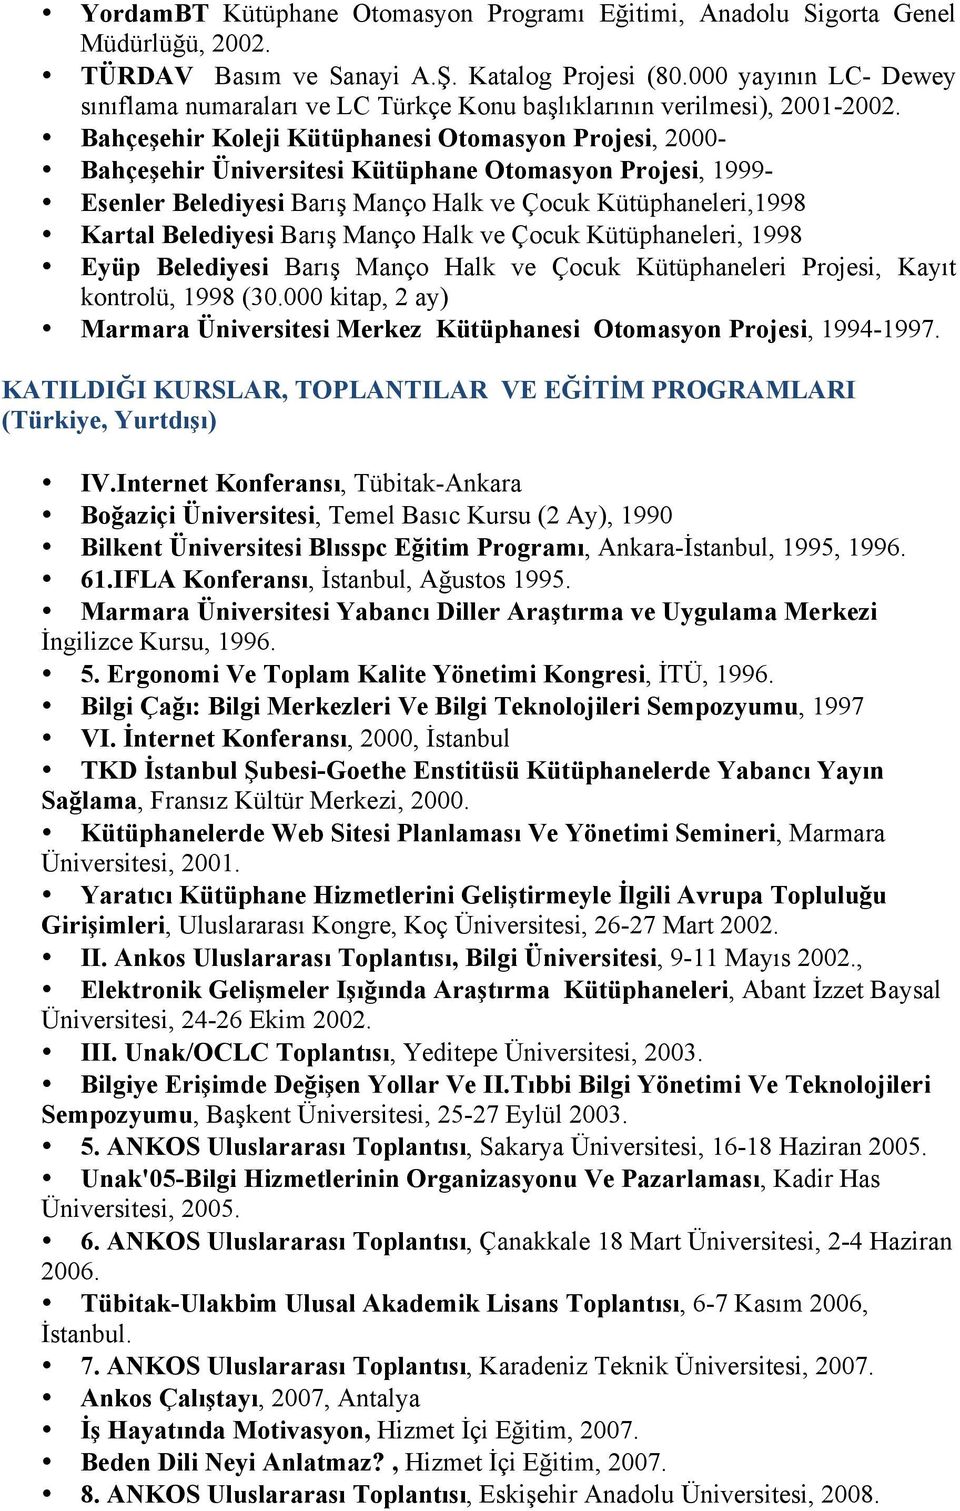 Bahçeşehir Koleji Kütüphanesi Otomasyon Projesi, 2000- Bahçeşehir Üniversitesi Kütüphane Otomasyon Projesi, 1999- Esenler Belediyesi Barış Manço Halk ve Çocuk Kütüphaneleri,1998 Kartal Belediyesi